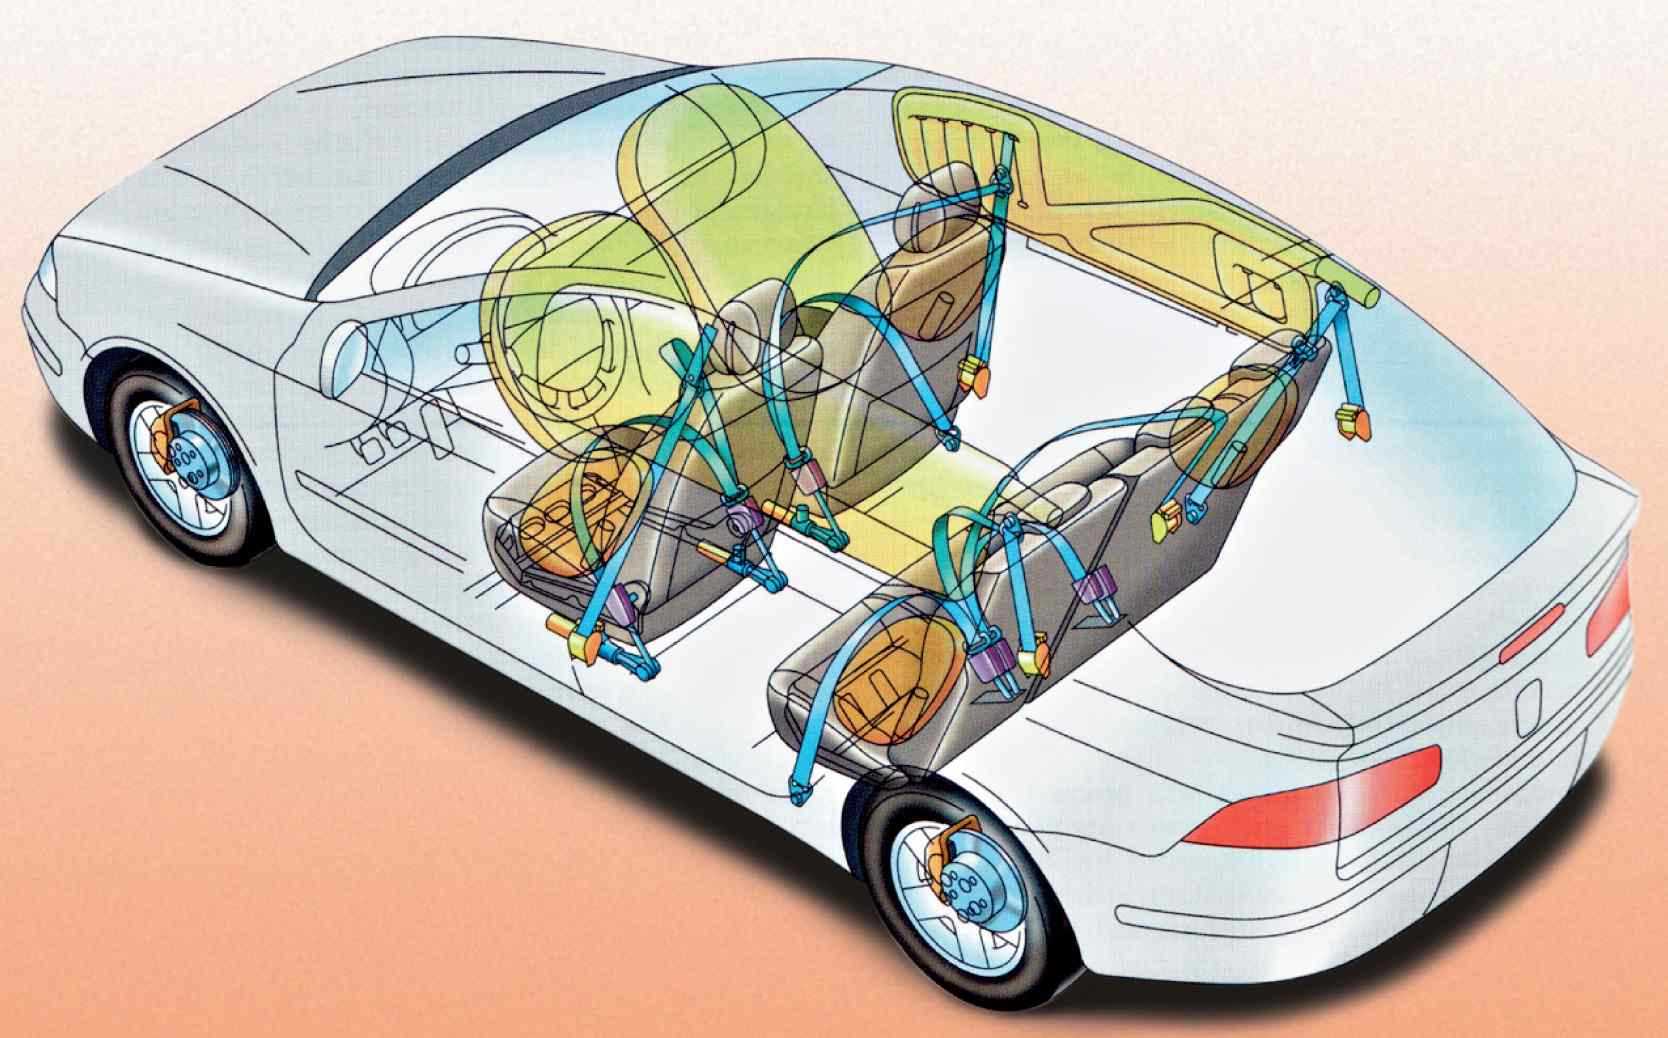 Безопасность автомобиля во многом зависит от технического состояния тормозных систем